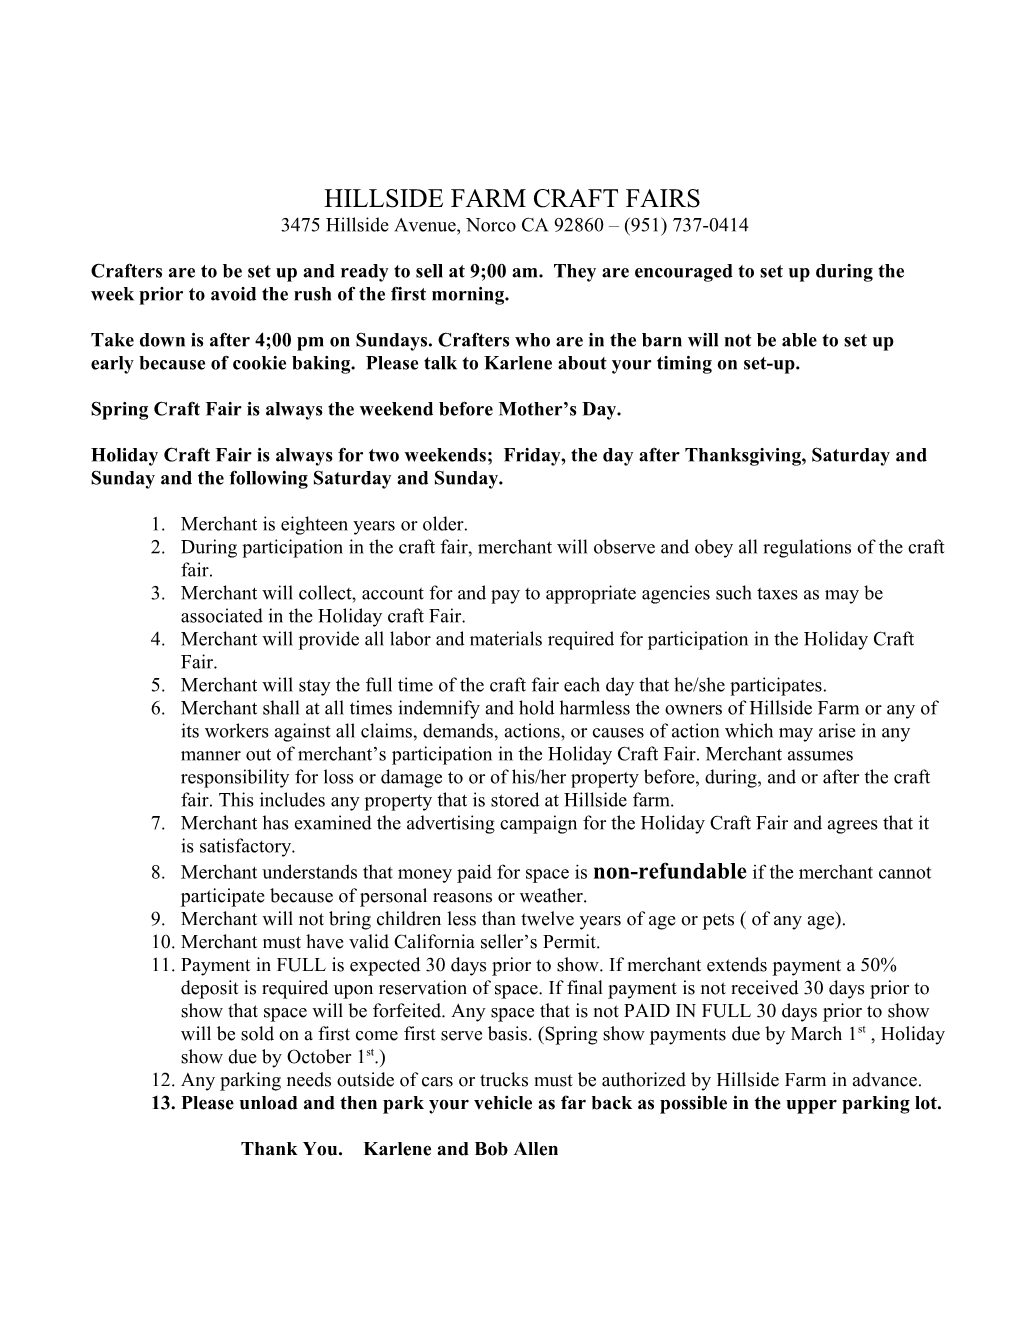 Hillside Farm Craft Fairs